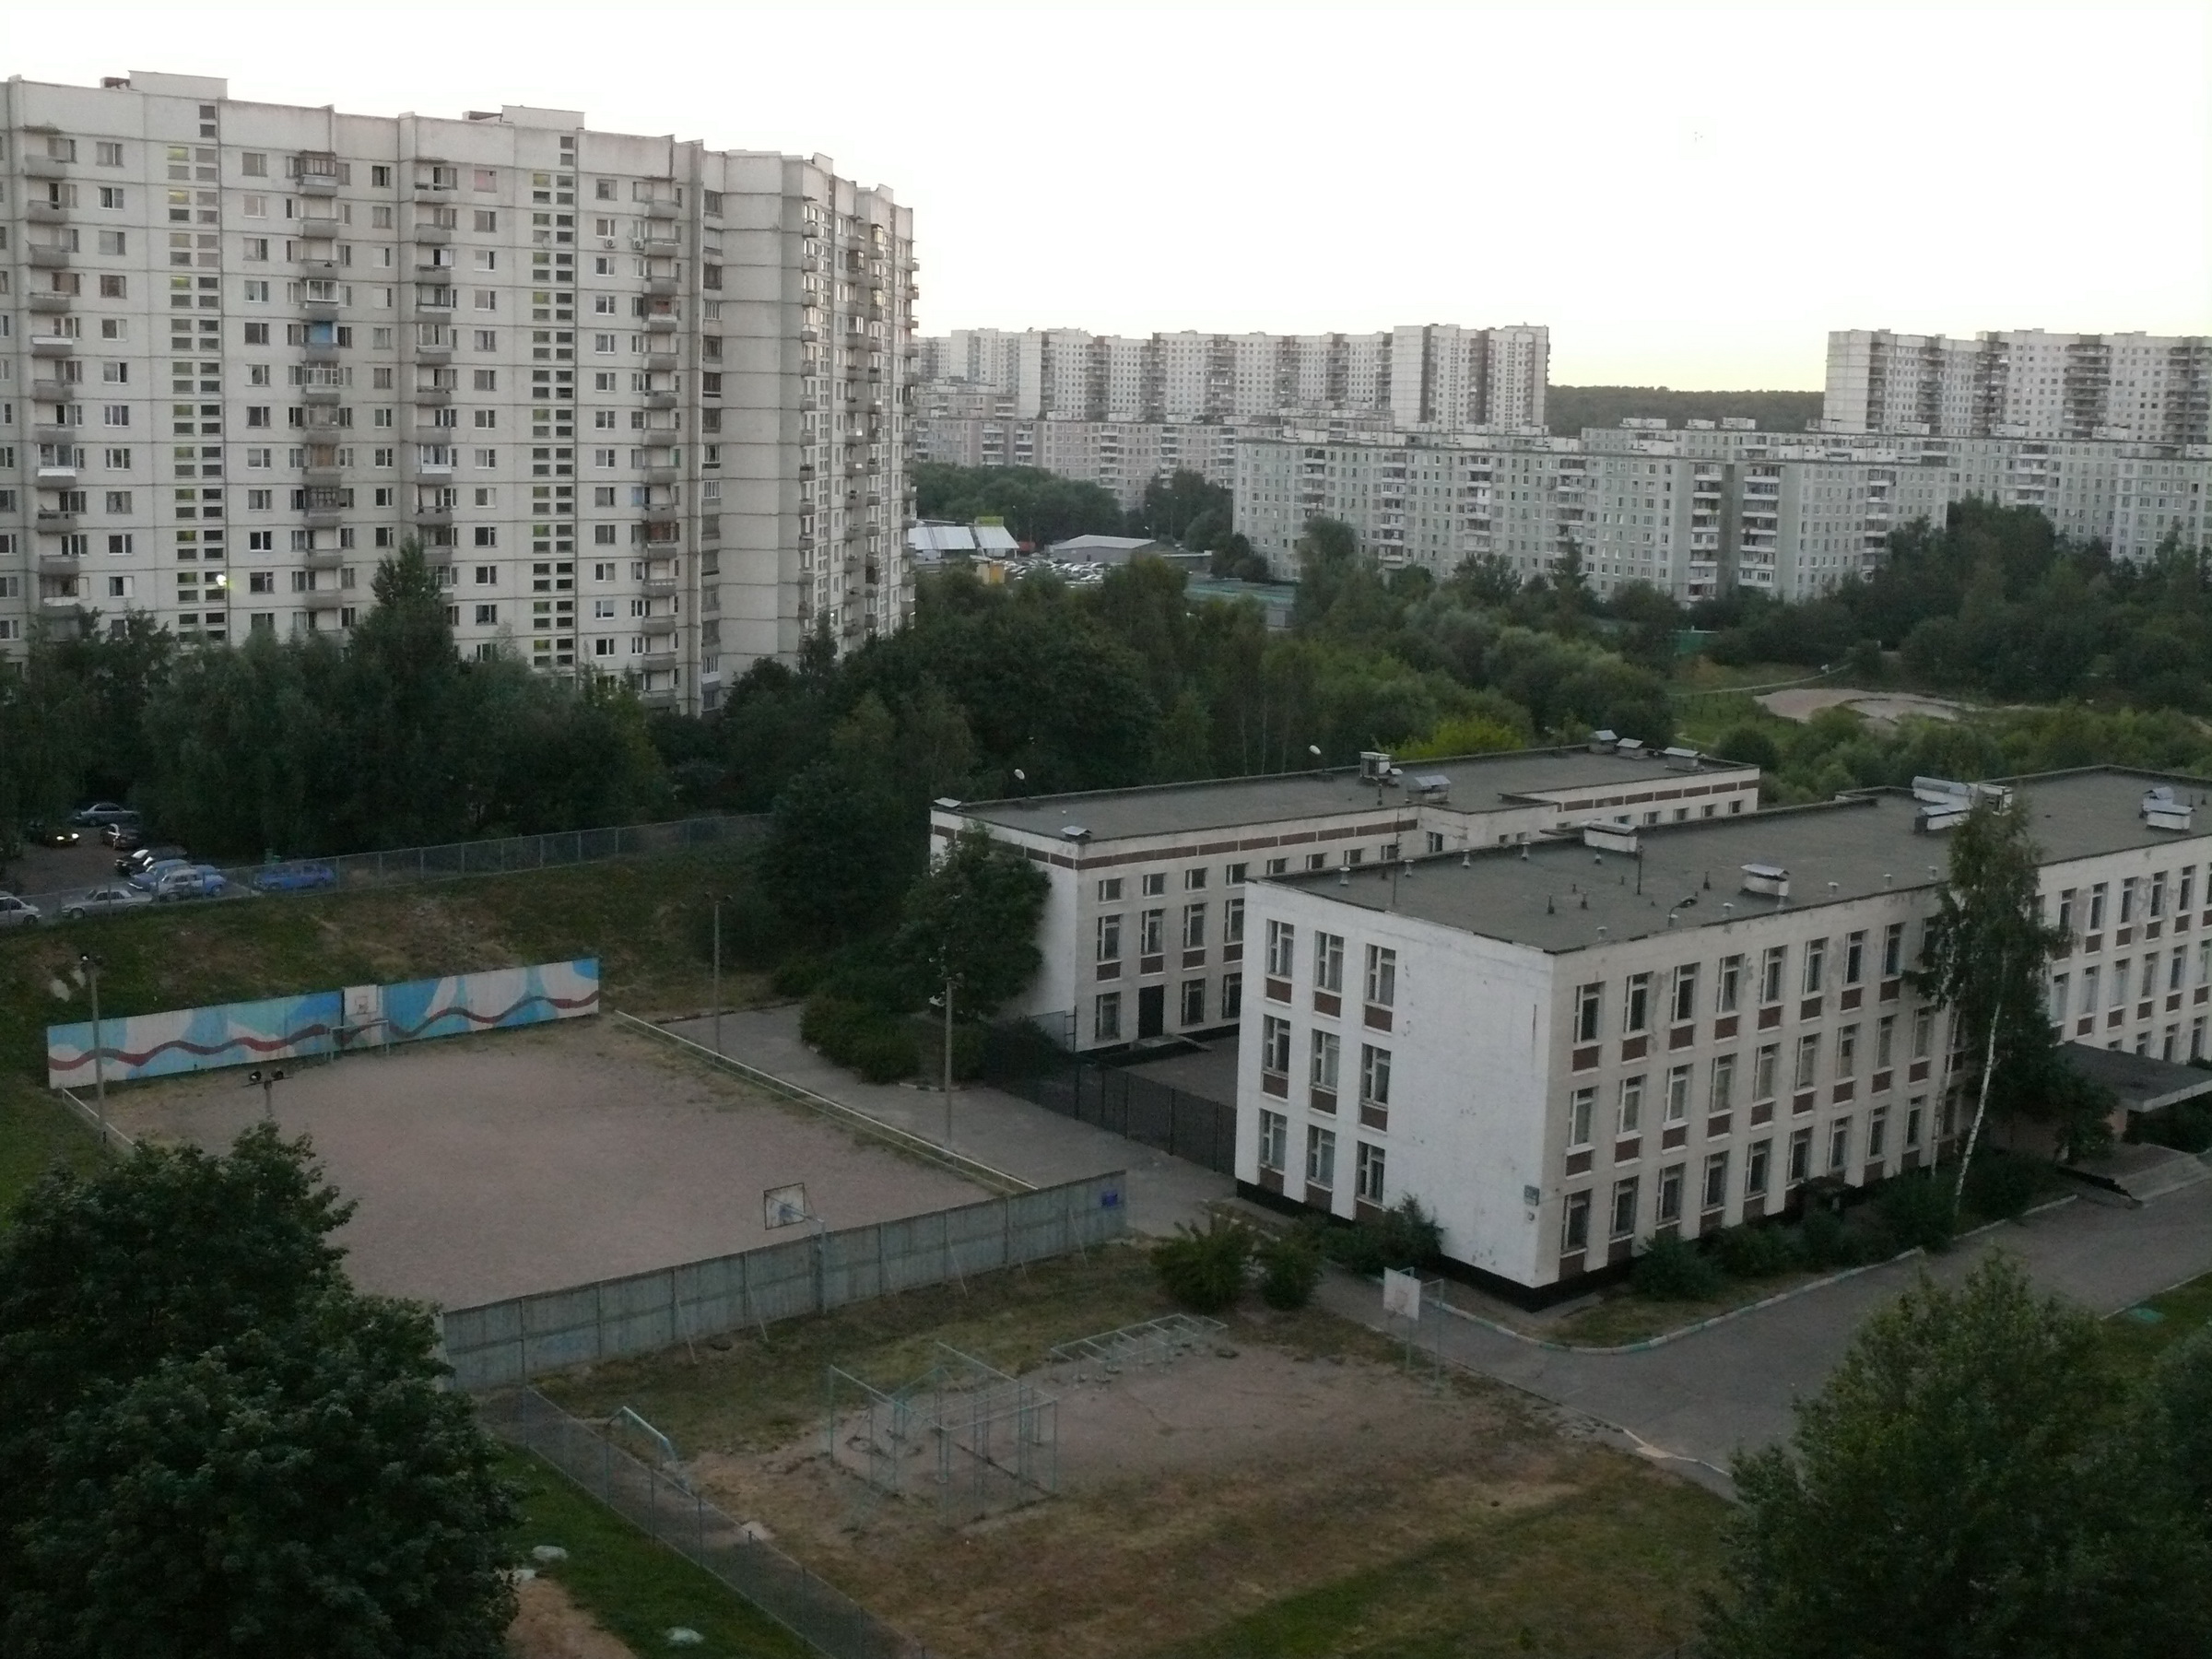 П ясенево. Ясенево 2000 год. Школа 862 Ясенево. Школа 1106 Ясенево. Ясенево (район Москвы).